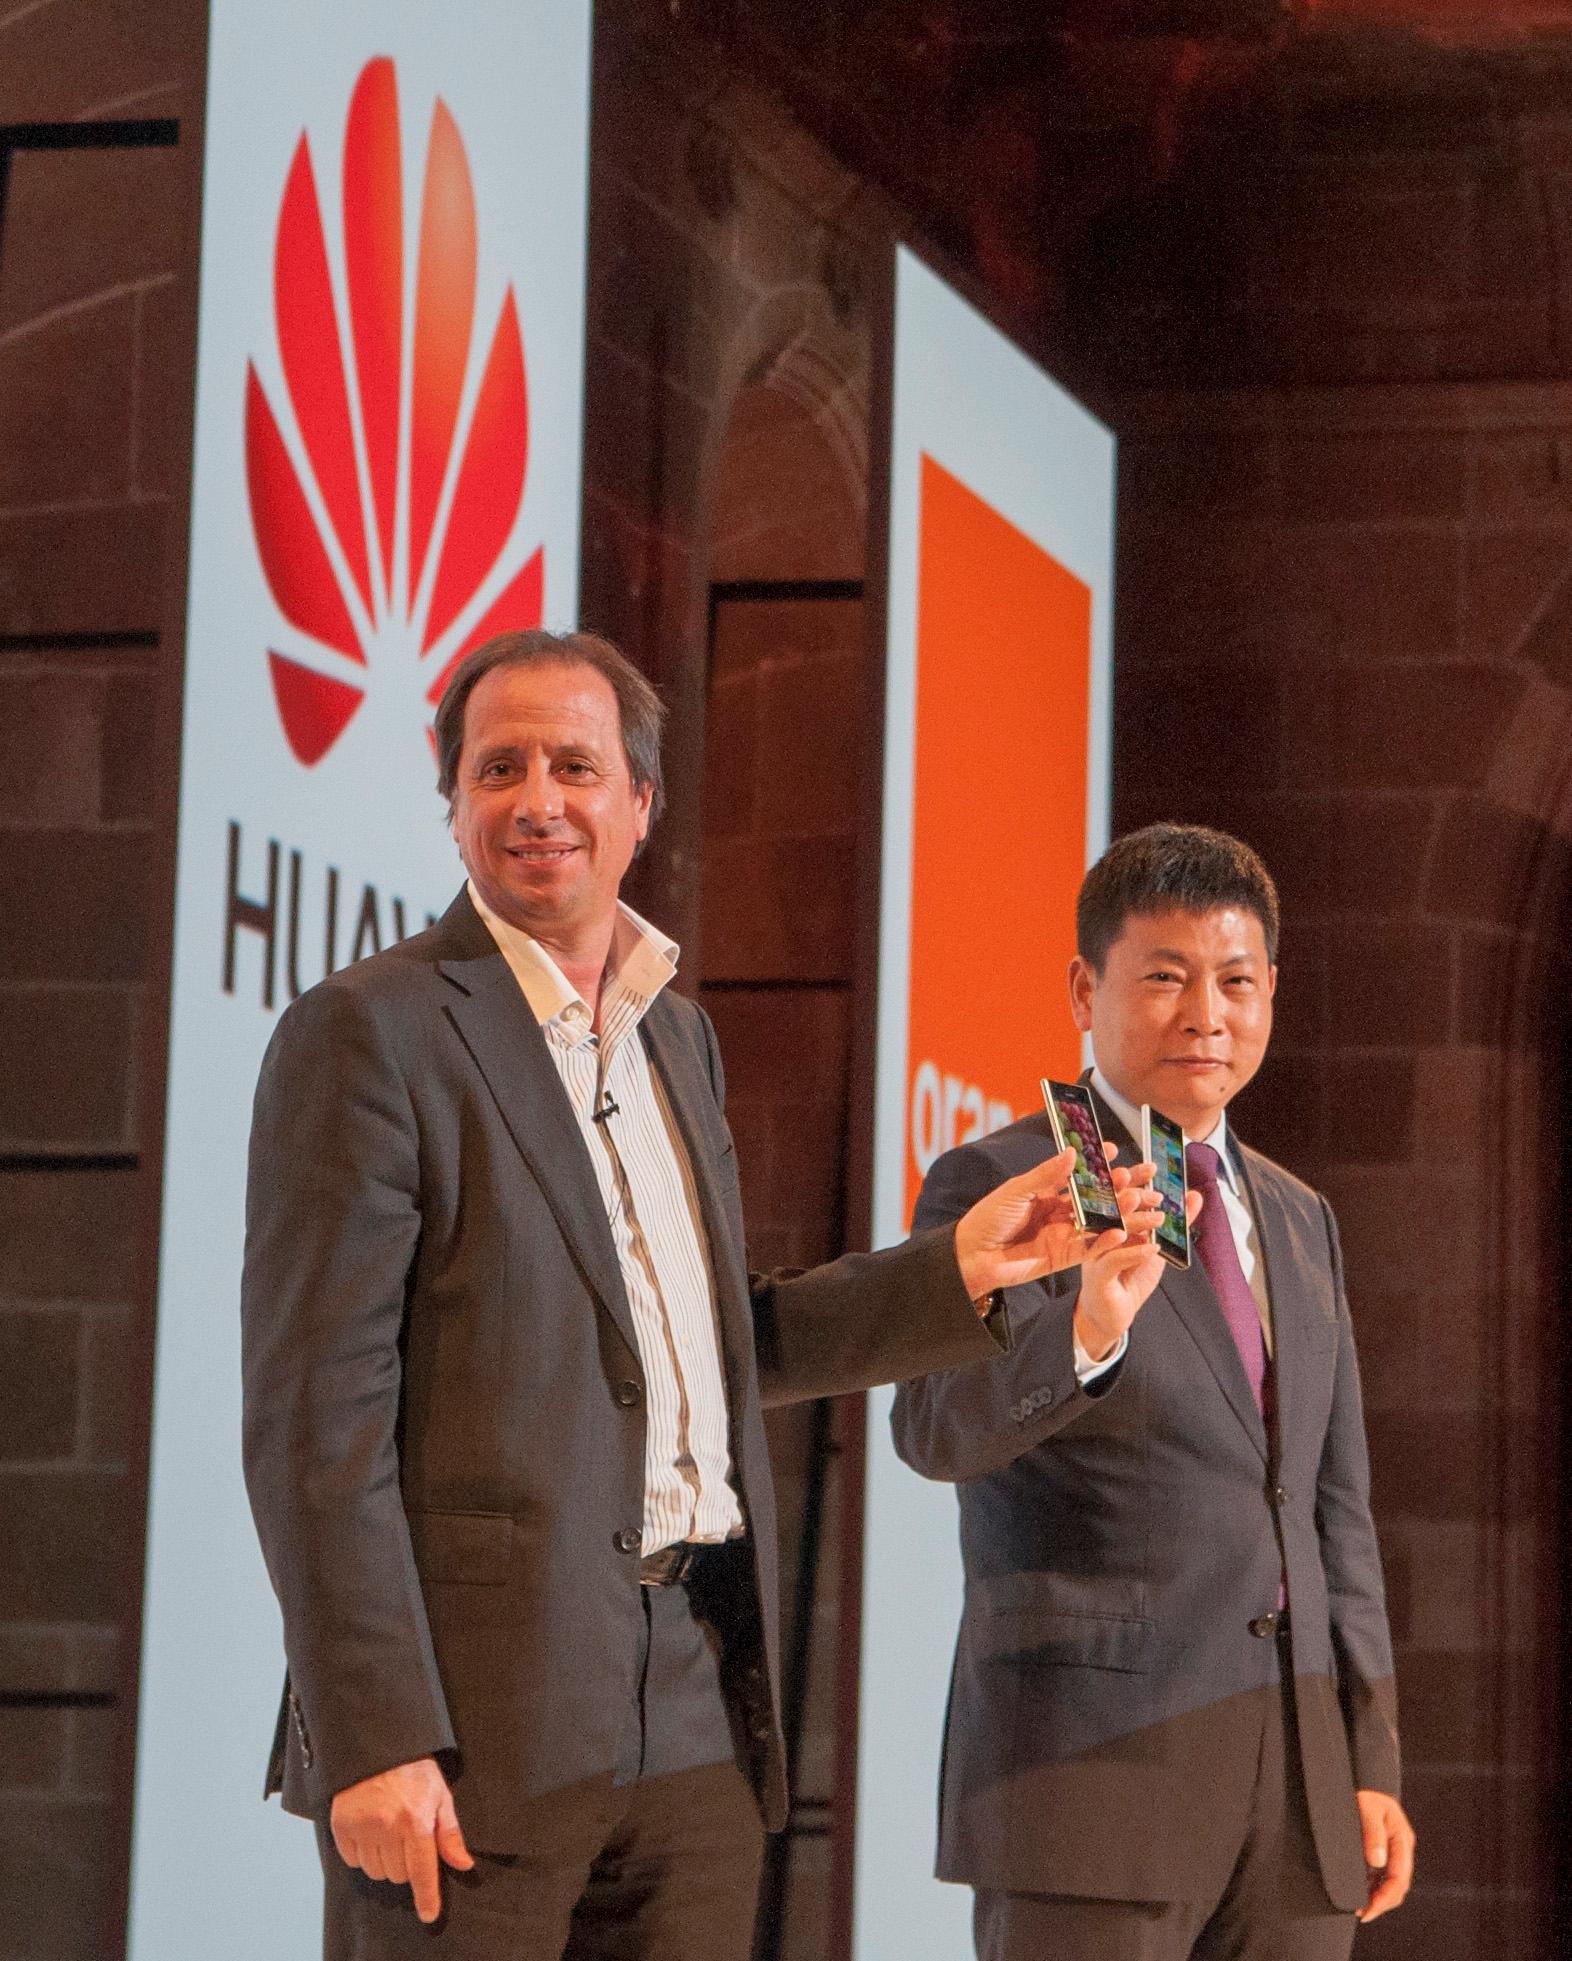 Sjefene for Huawei og operatøren Orange viser frem den nye telefonen.Foto: Finn Jarle Kvalheim, Amobil.no